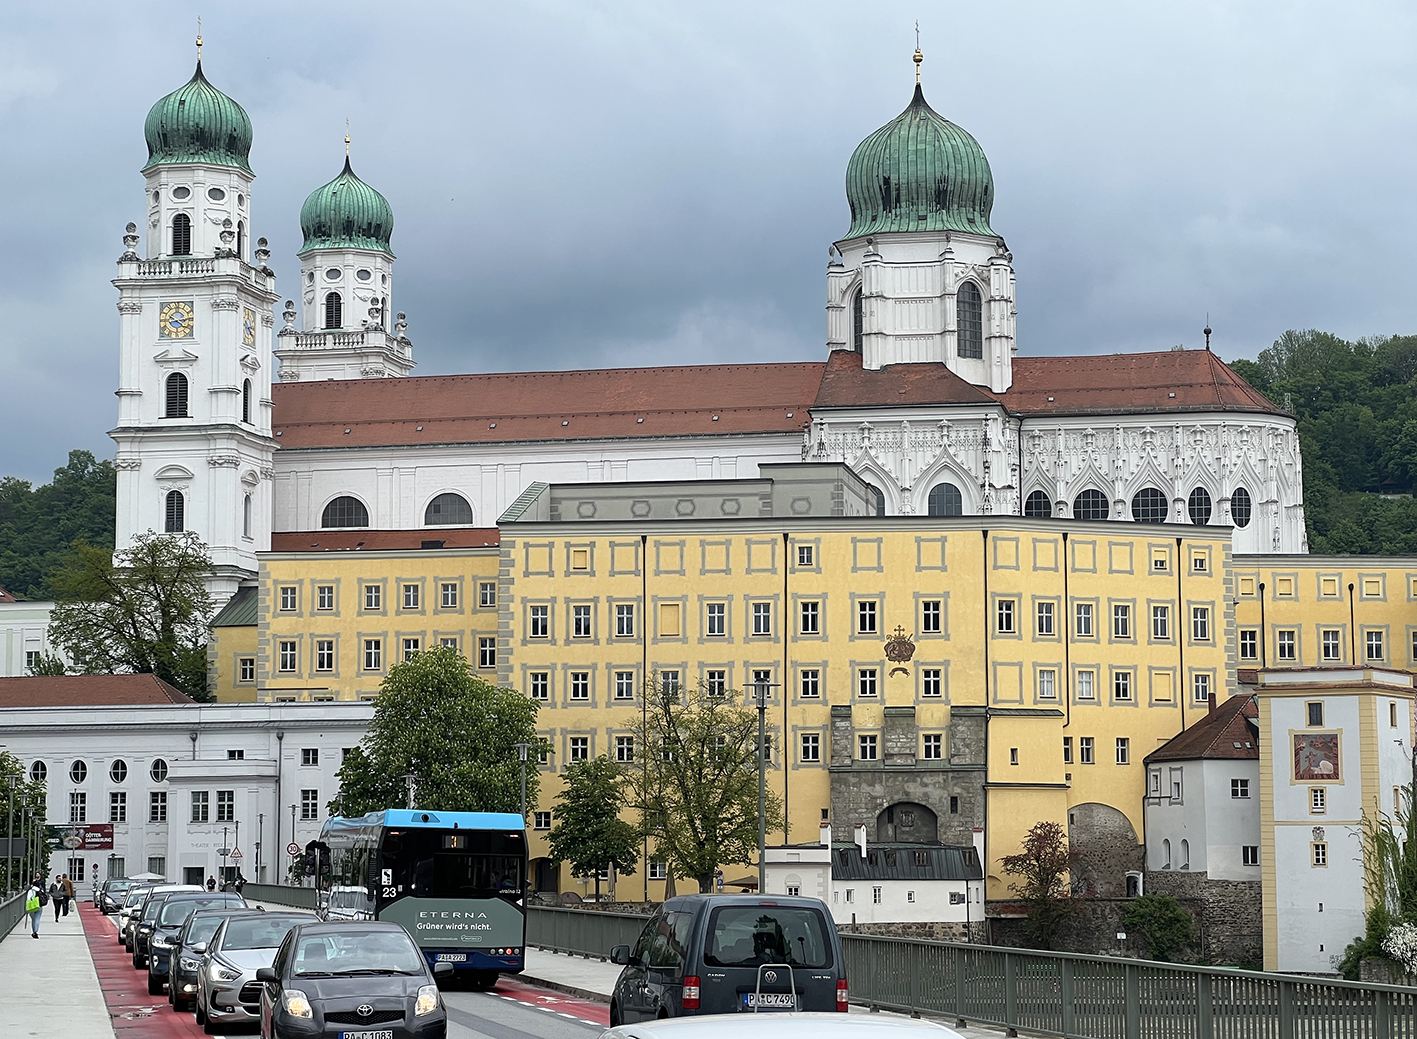 11-20230516-4111-Passau